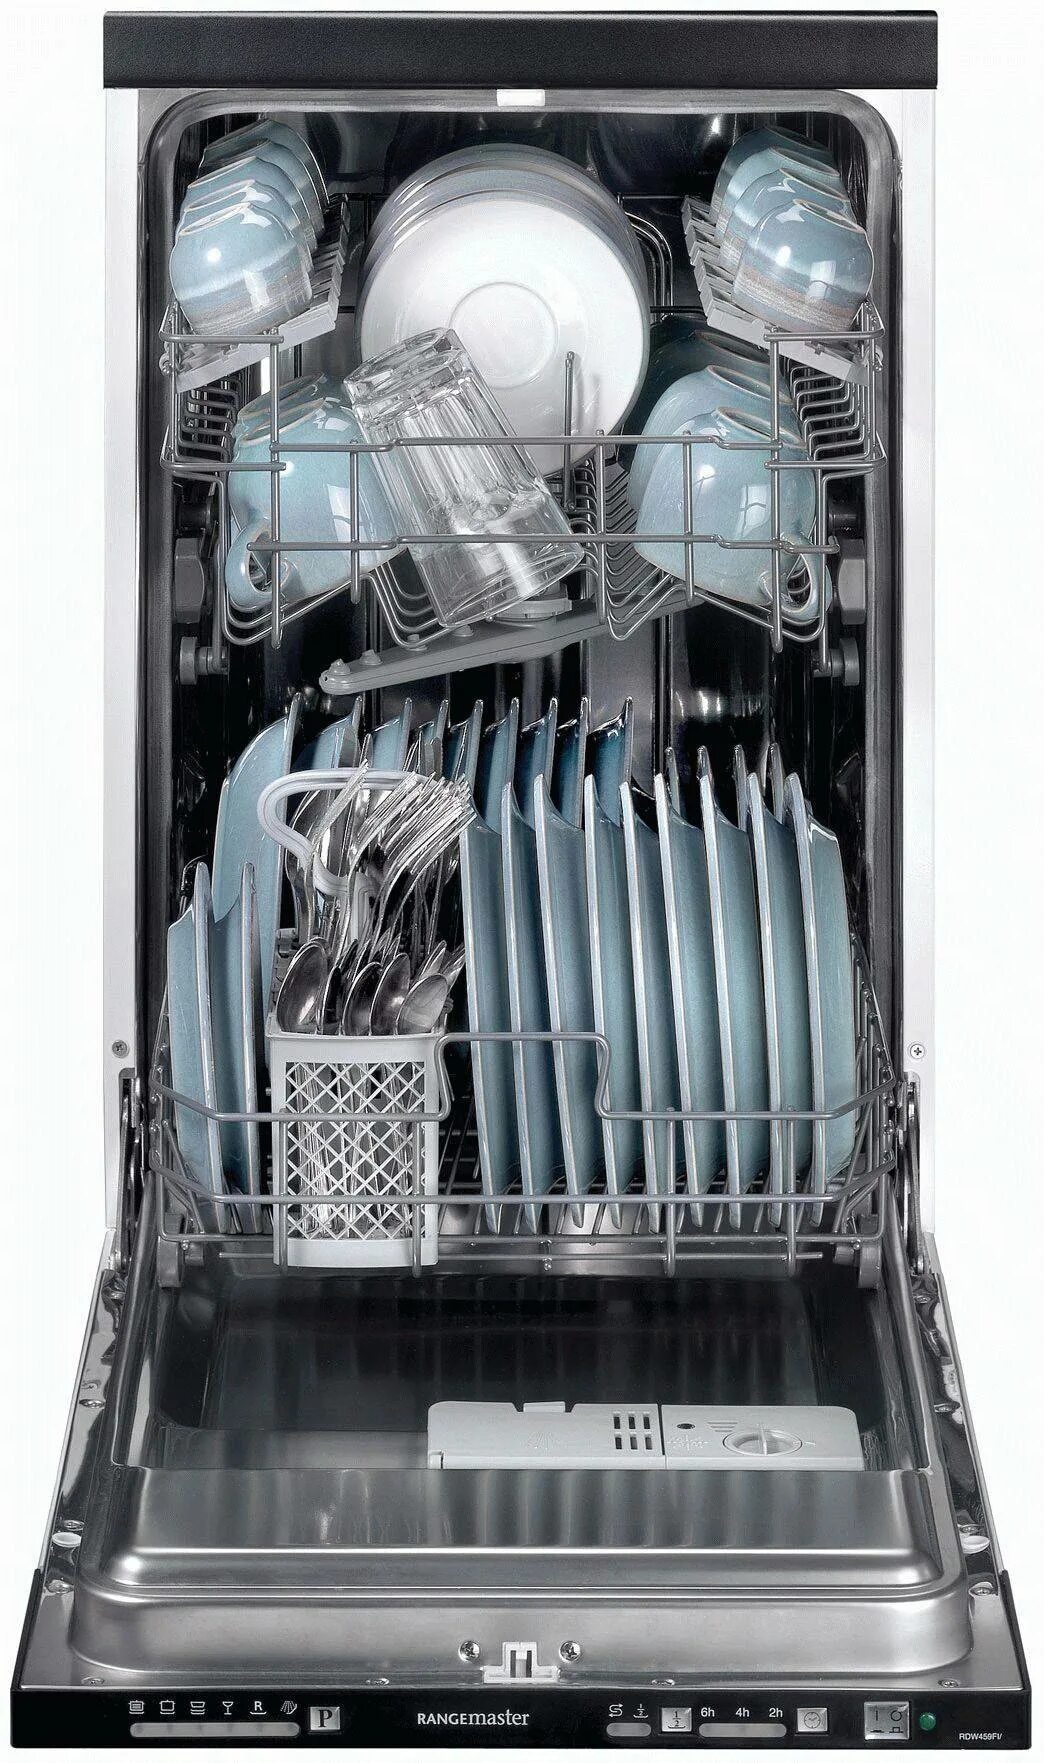 Встроенная посудомойка 40 см. Посудомойка Bosch 40 см. встраиваемая 40 см.. Посудомоечная машина встраиваемая 40 см ширина. Посудомоечная машина бош 40 см встроенная. Посудомоечная машина (45 см) Gorenje gs53010w.